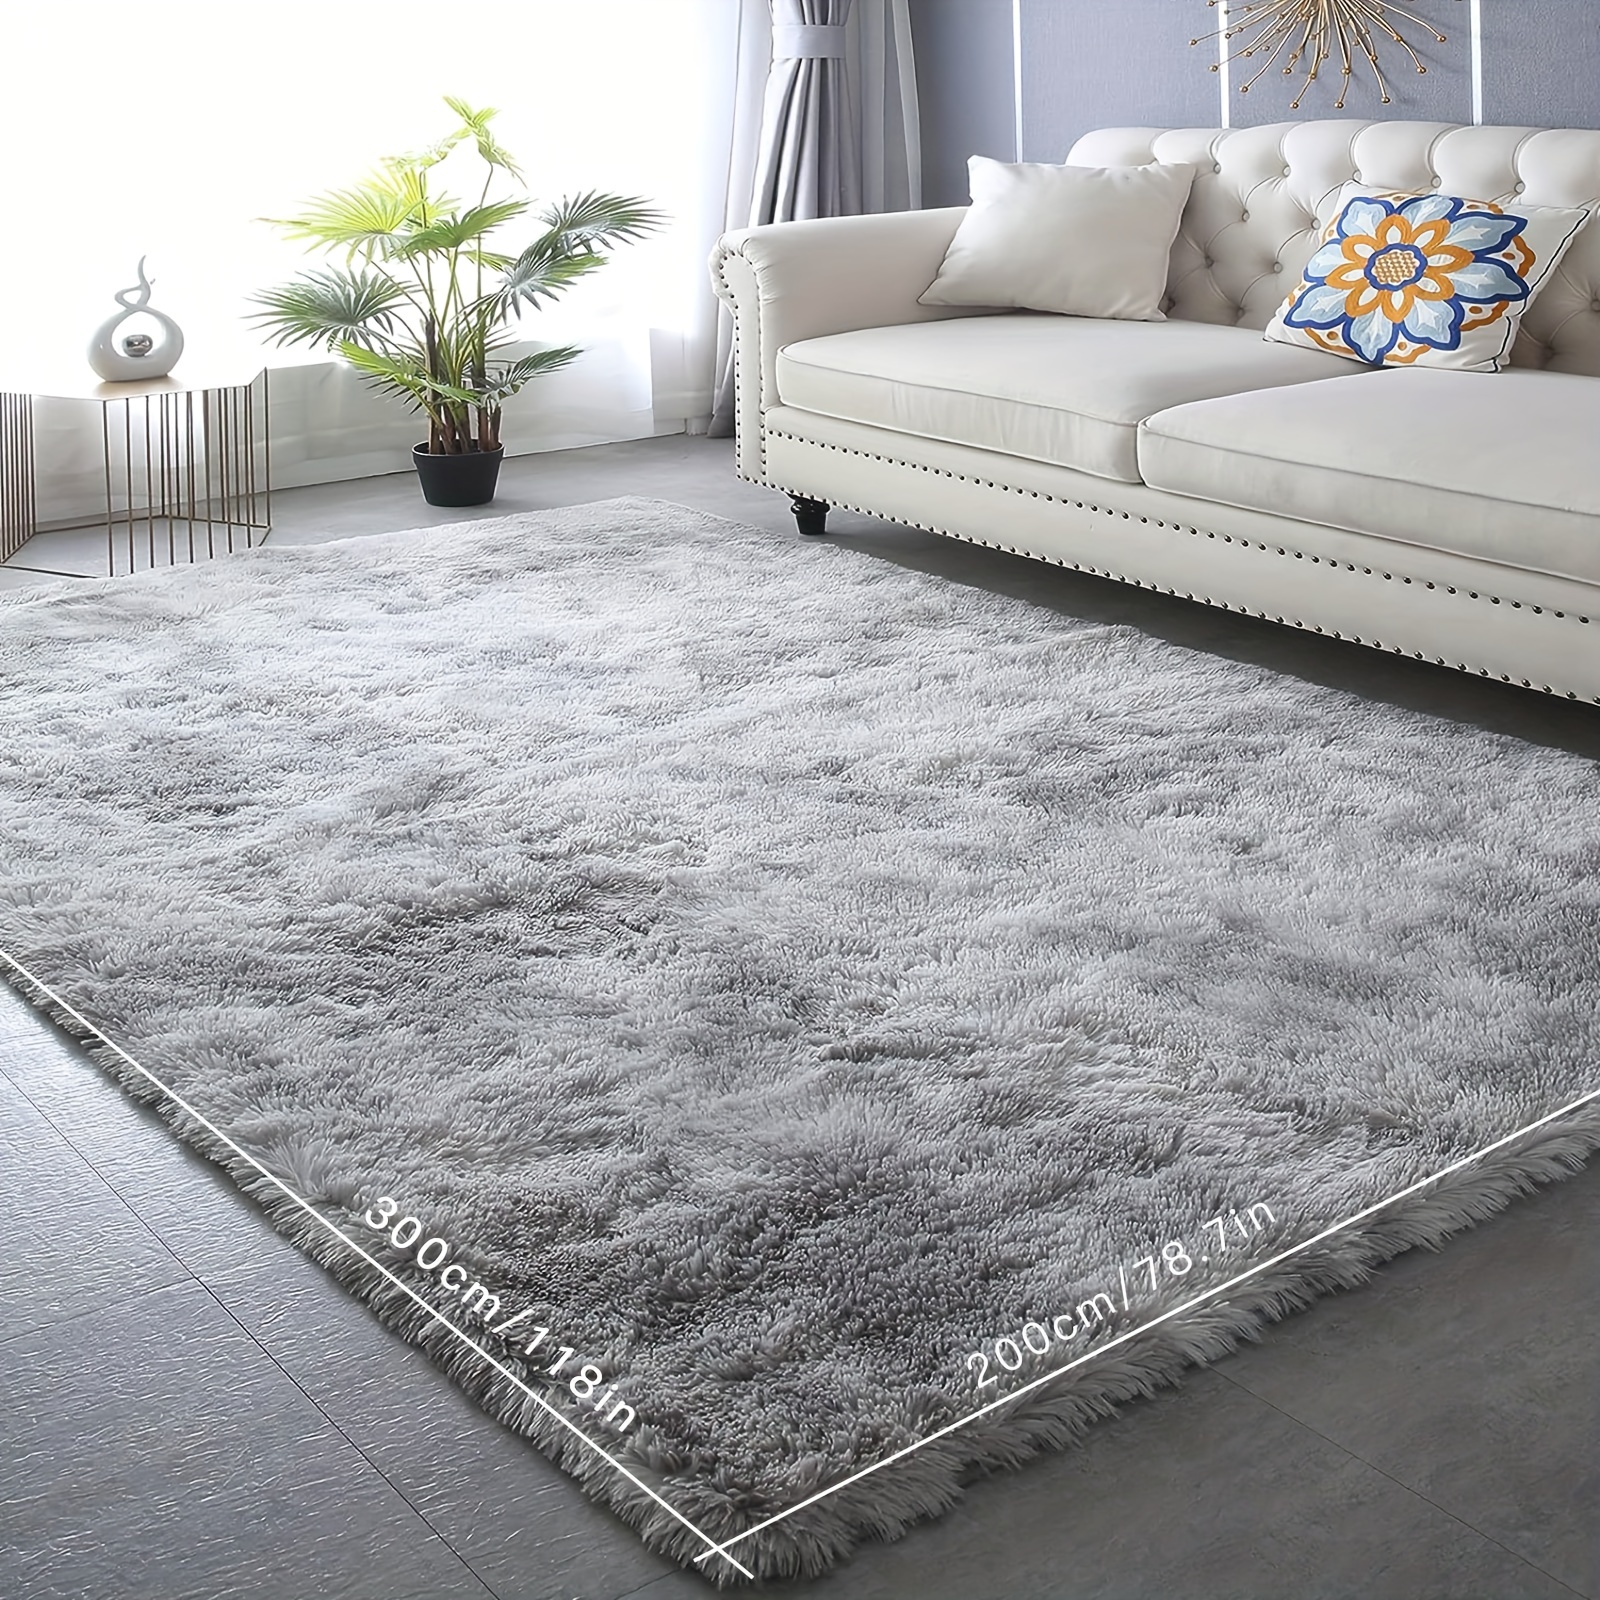 Tapis de sol nordique de luxe épaissi, tapis en laine, tapis doux